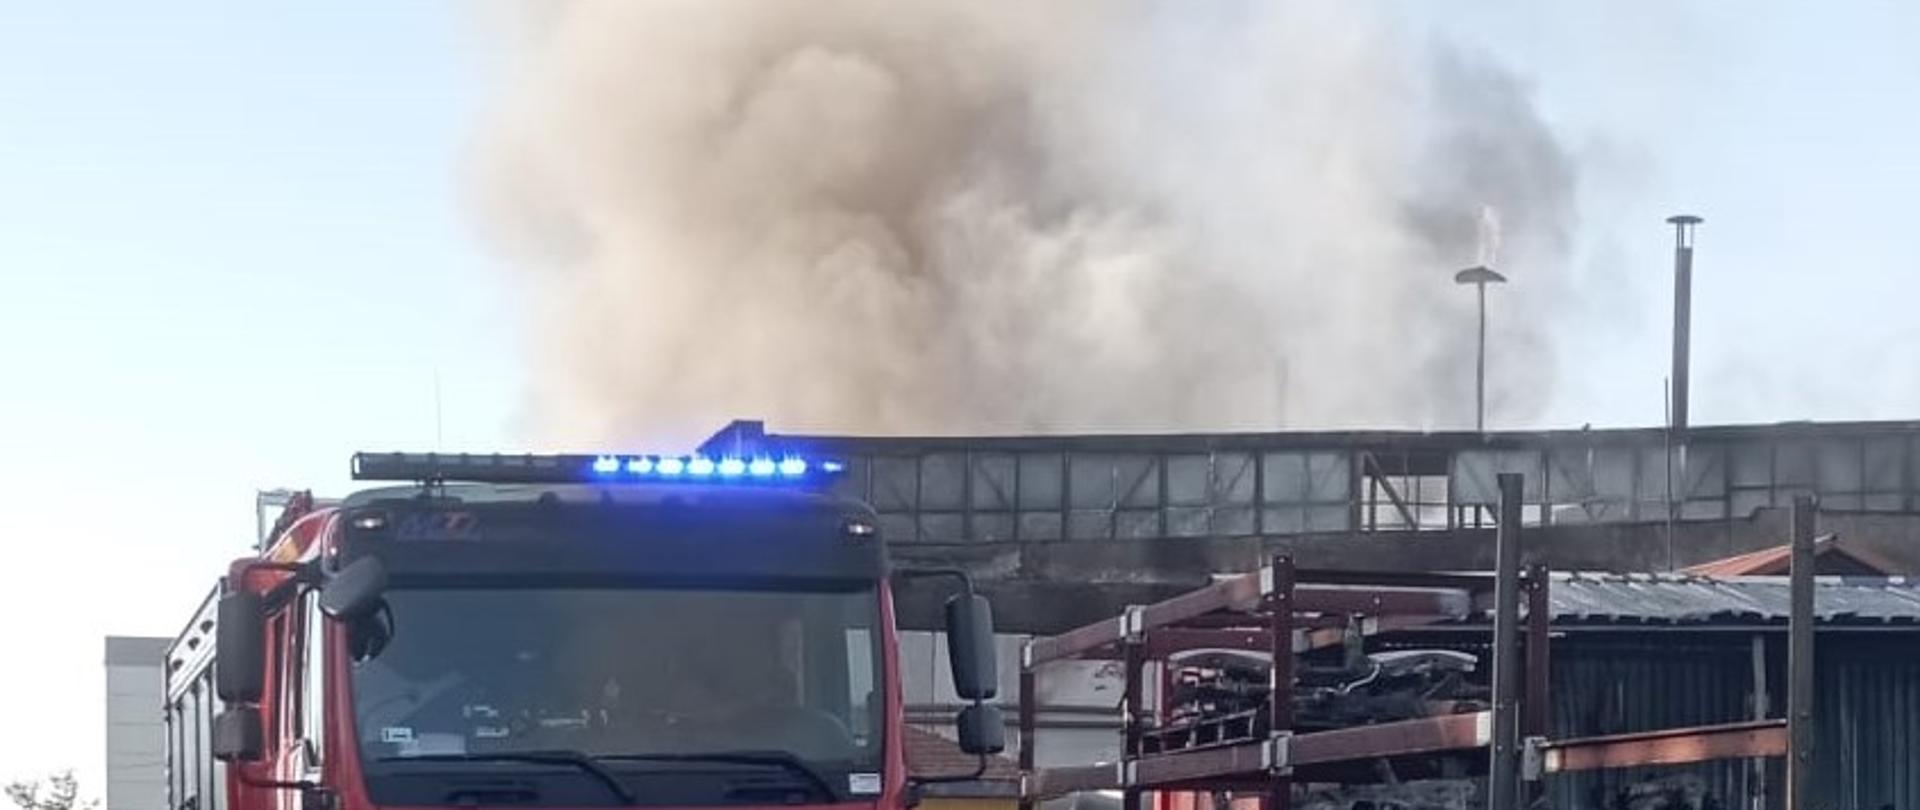 Zdjęcie przedstawia teren zakładu gdzie doszło do pożaru. W głębi hala nad którą unosi się gęsty dym. Przed halą stoi samochód pożarniczy a przy nim strażak.